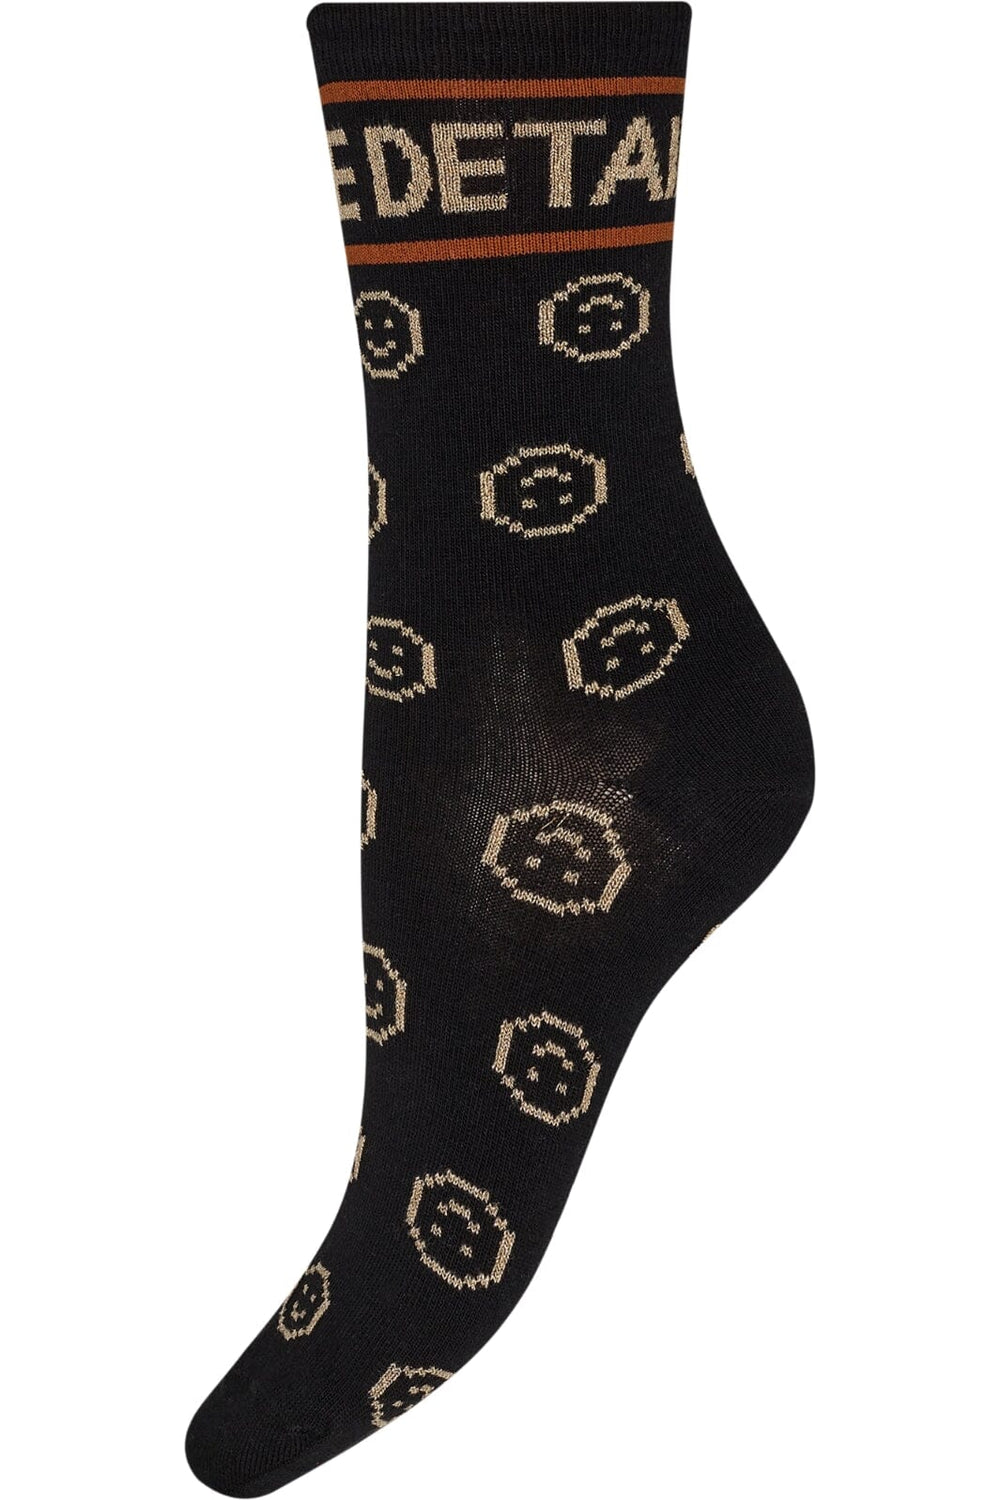 Hype The Detail - Fashion Sock - Sort Strømper 